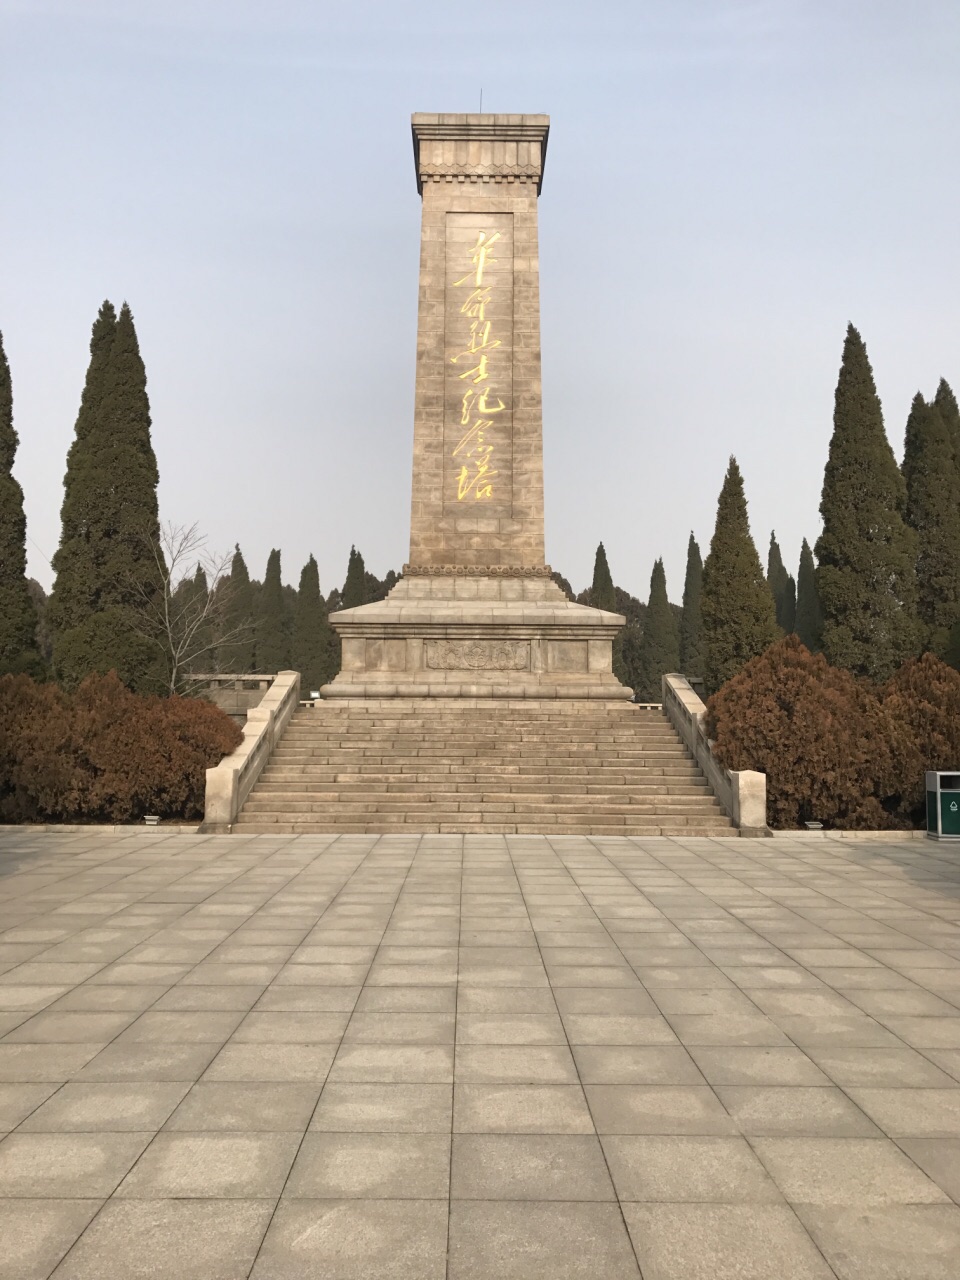 2023莱芜战役纪念馆游玩攻略,非常好,第一次去这样的景点